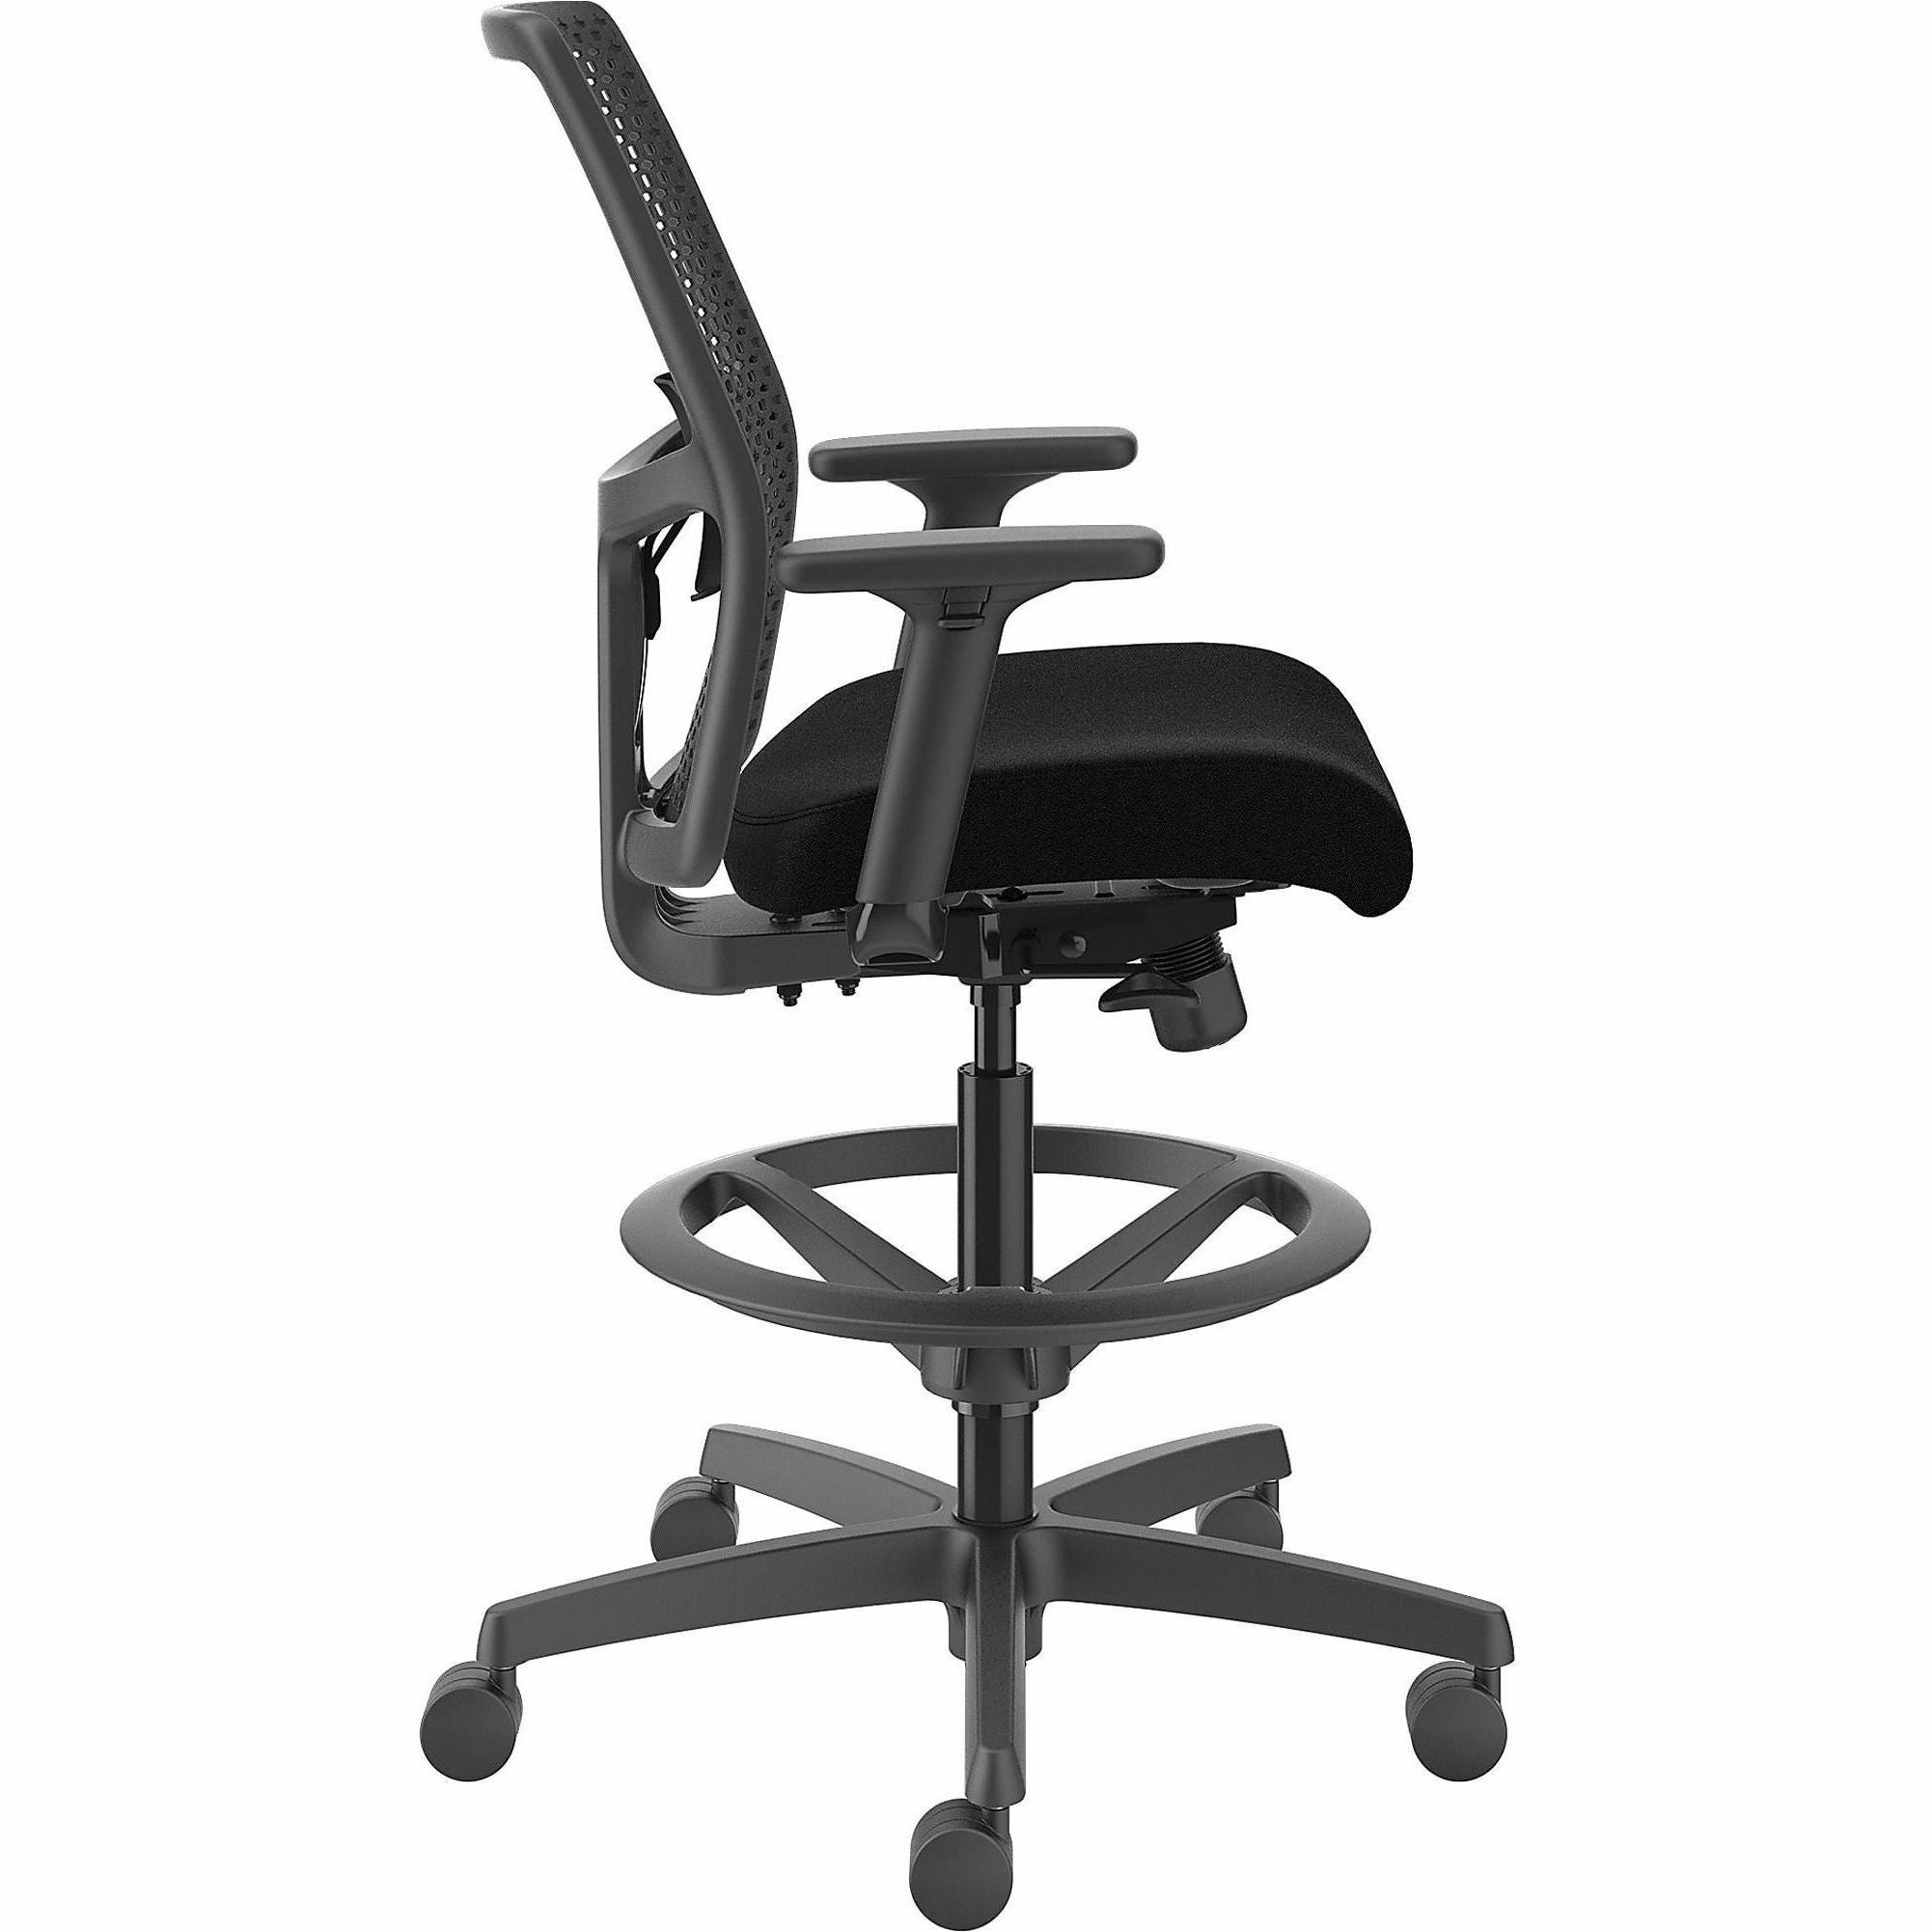 hon-ignition-reactiv-low-back-task-stool-black-foam-seat-black-frame-low-back-5-star-base-armrest-1-each_honi1ra1a0c10at - 5